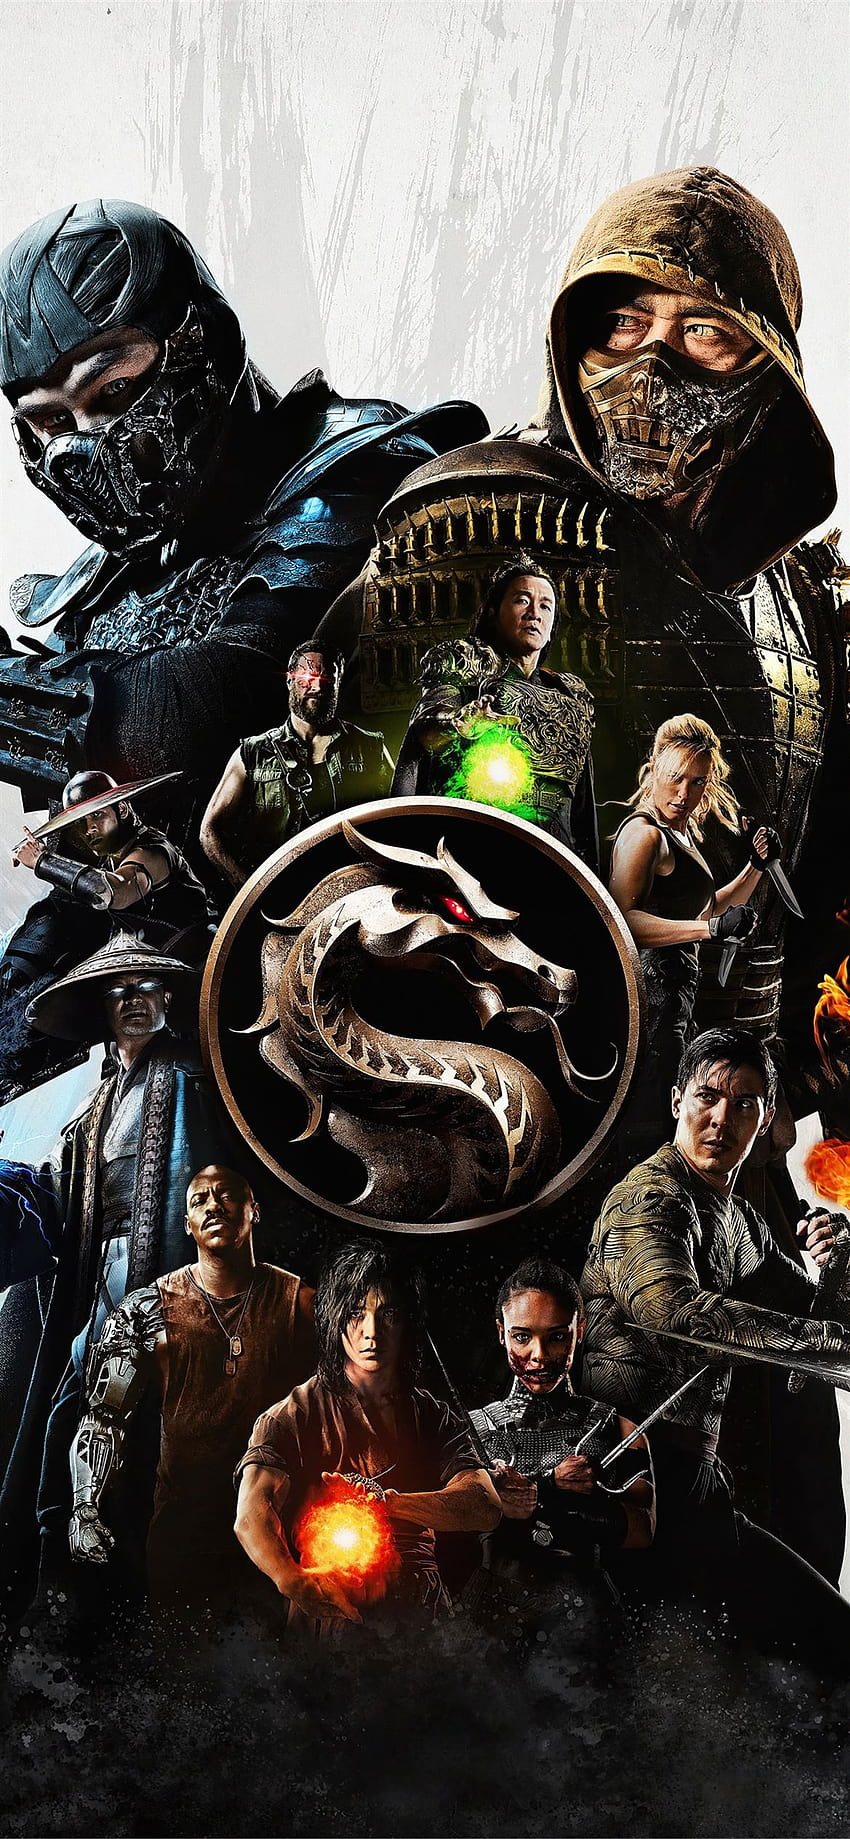 41 Mortal Kombat X iPhone Wallpaper  WallpaperSafari